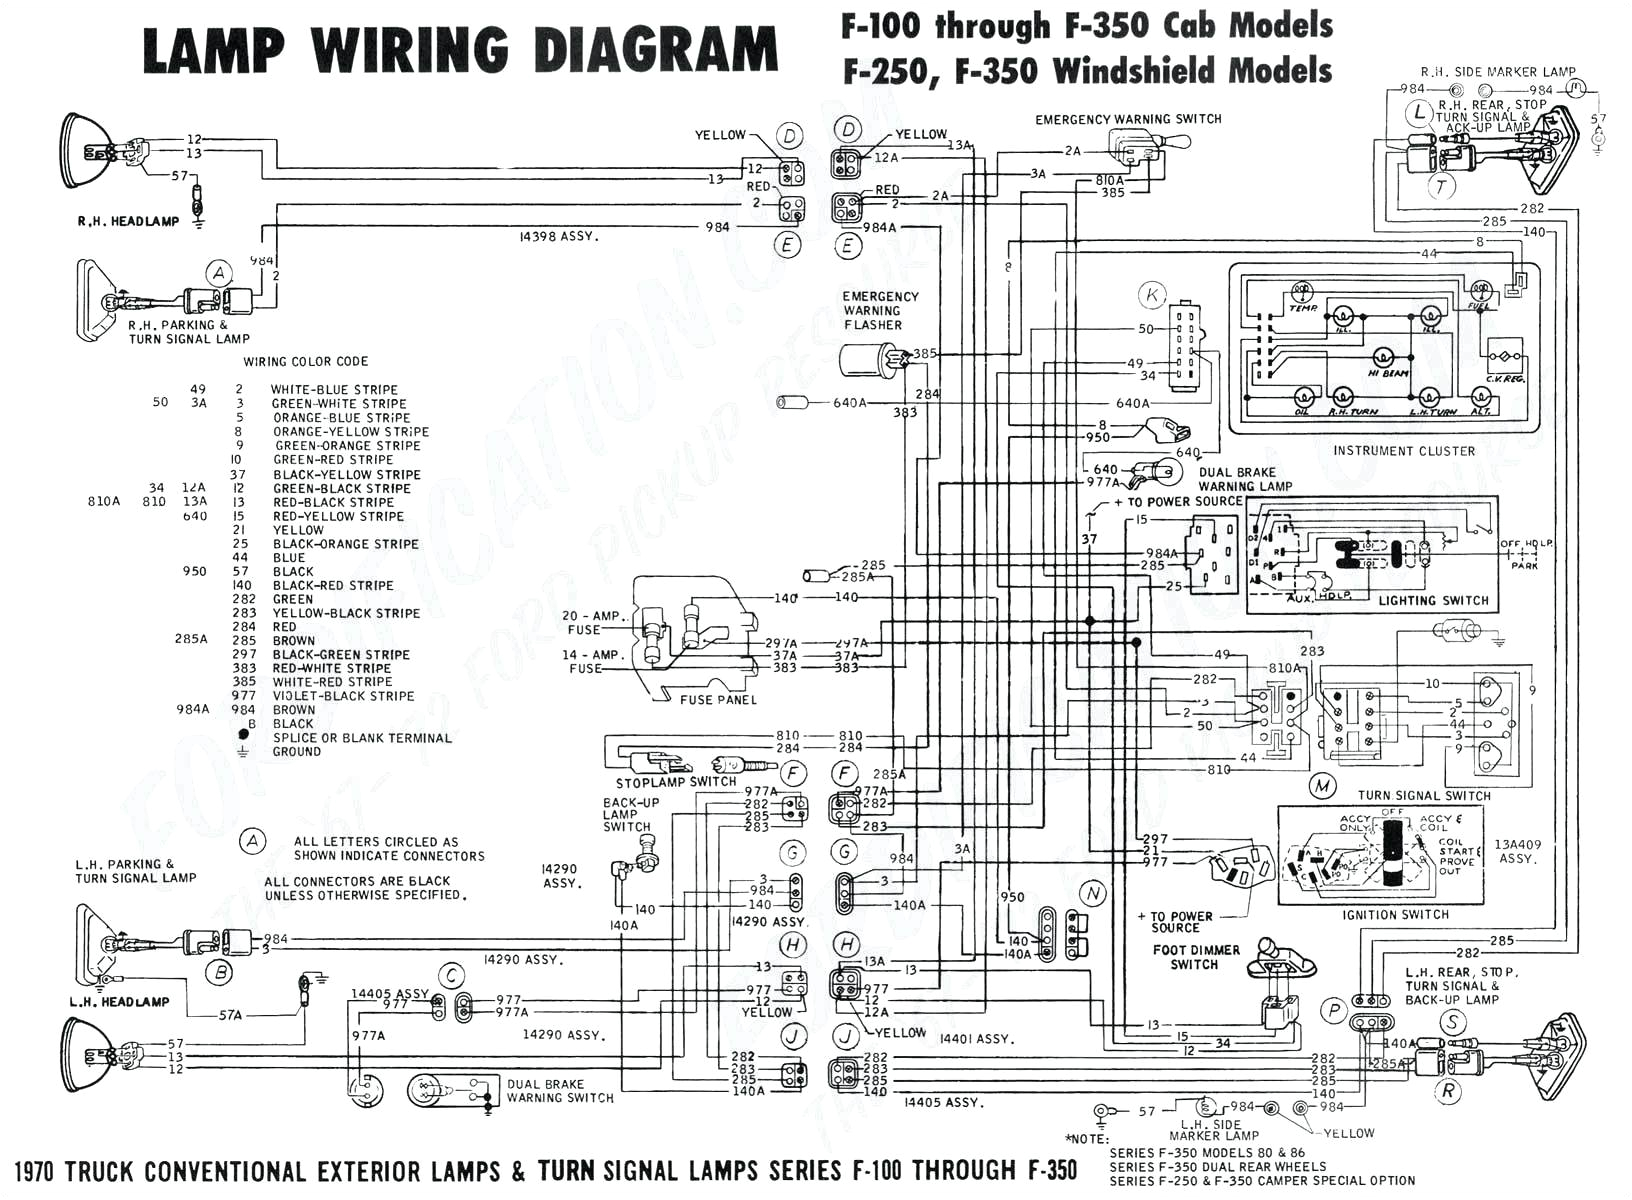 2003 dodge ram 2500 trailer wiring diagram thread 2005 dodge ram wiring diagram wire center u2022 rh inspeere co 1c jpg